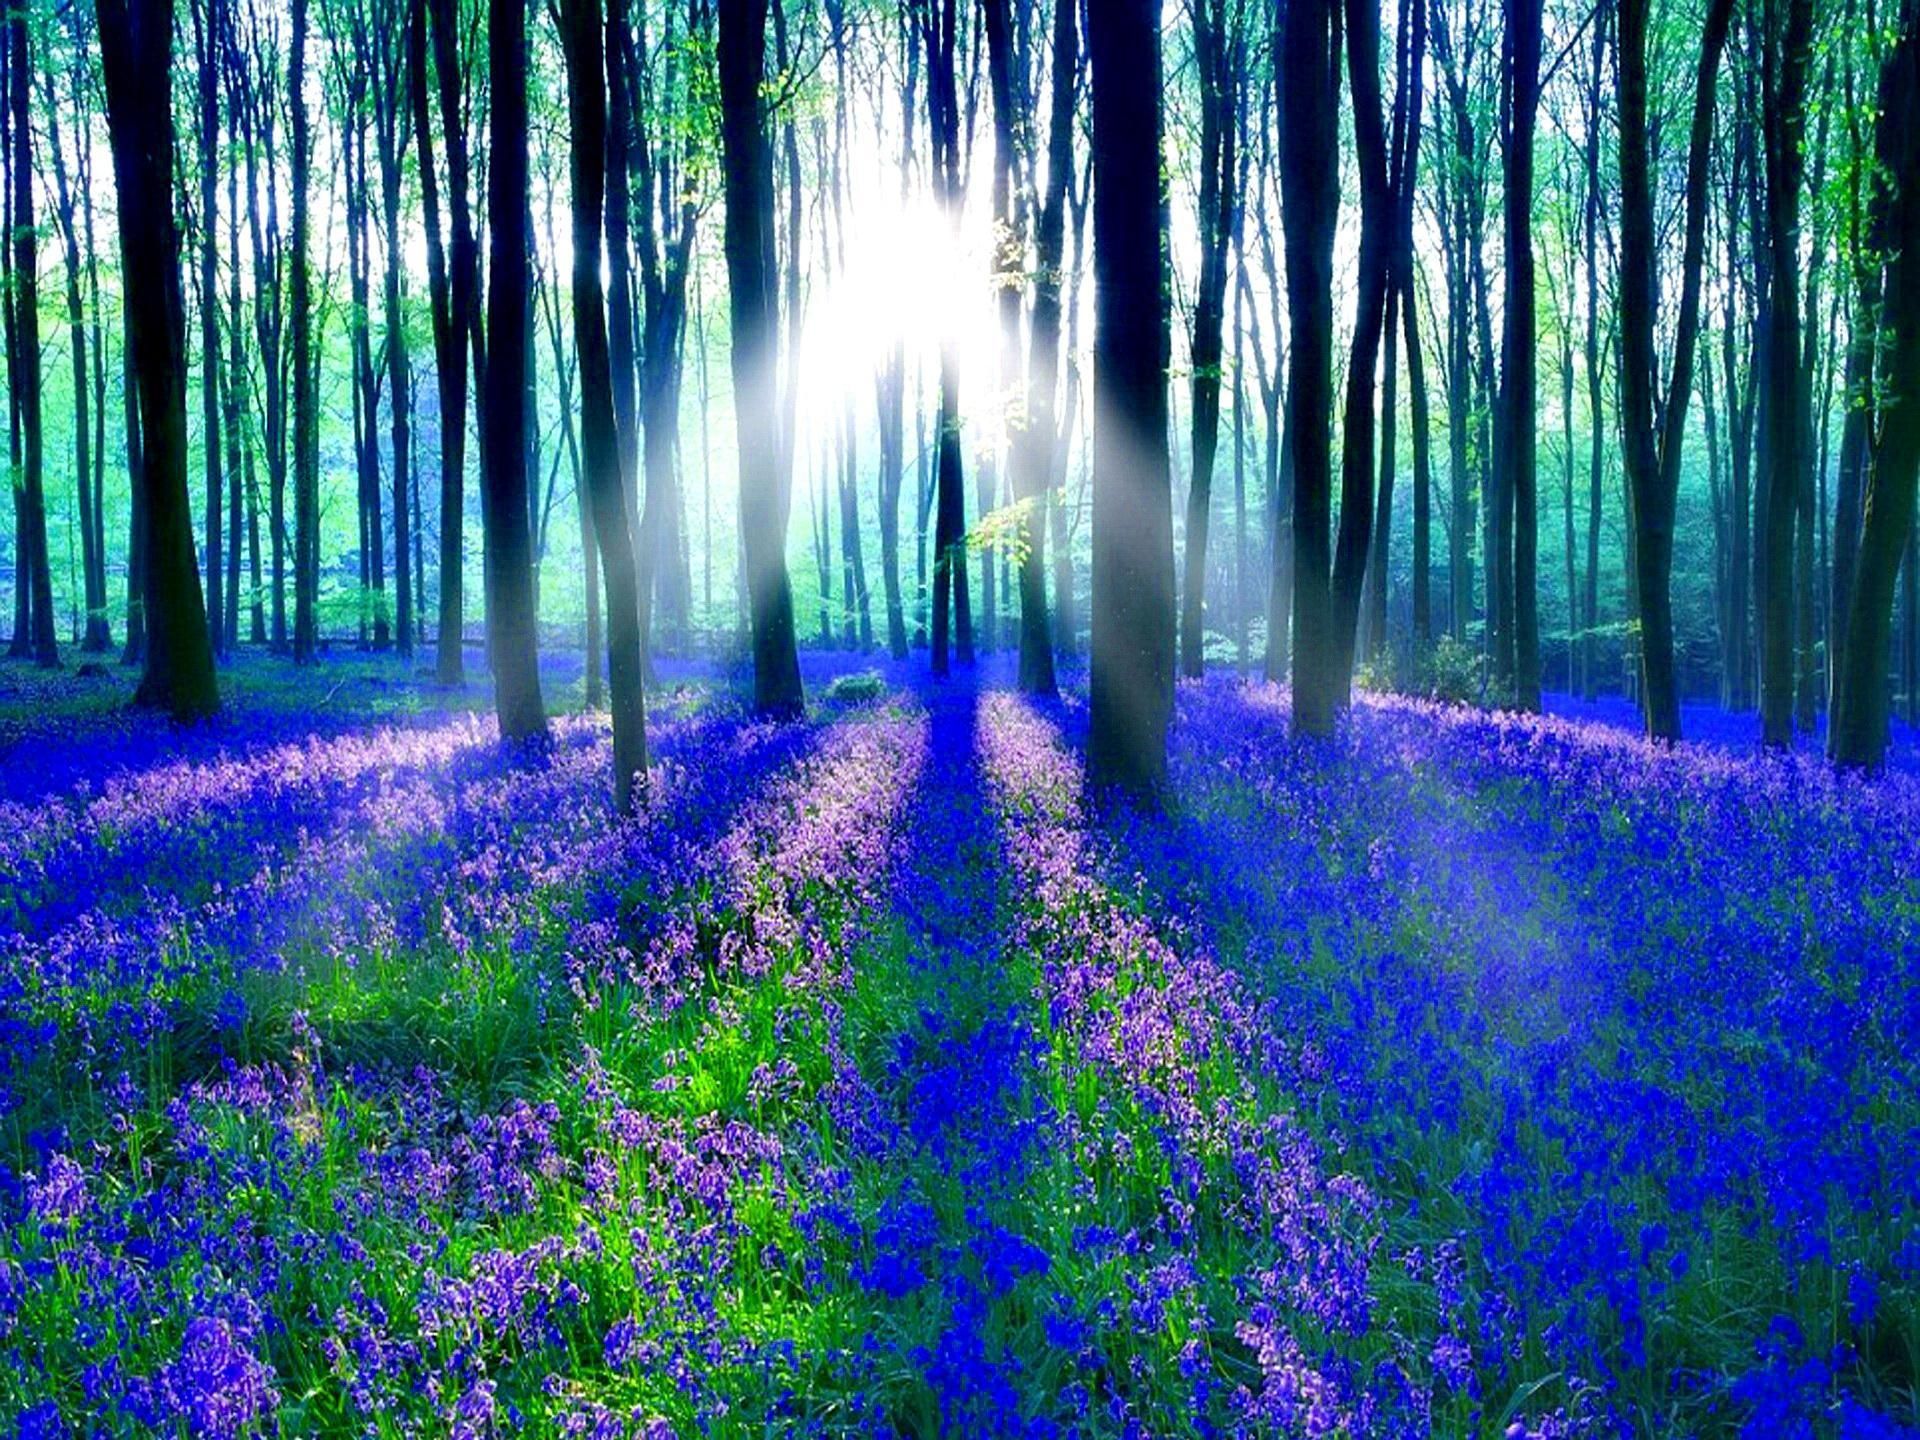 Bluebell Wood HD desktop wallpaper, Widescreen, High Definition. Enchanted forest scotland, Bluebells, Picture